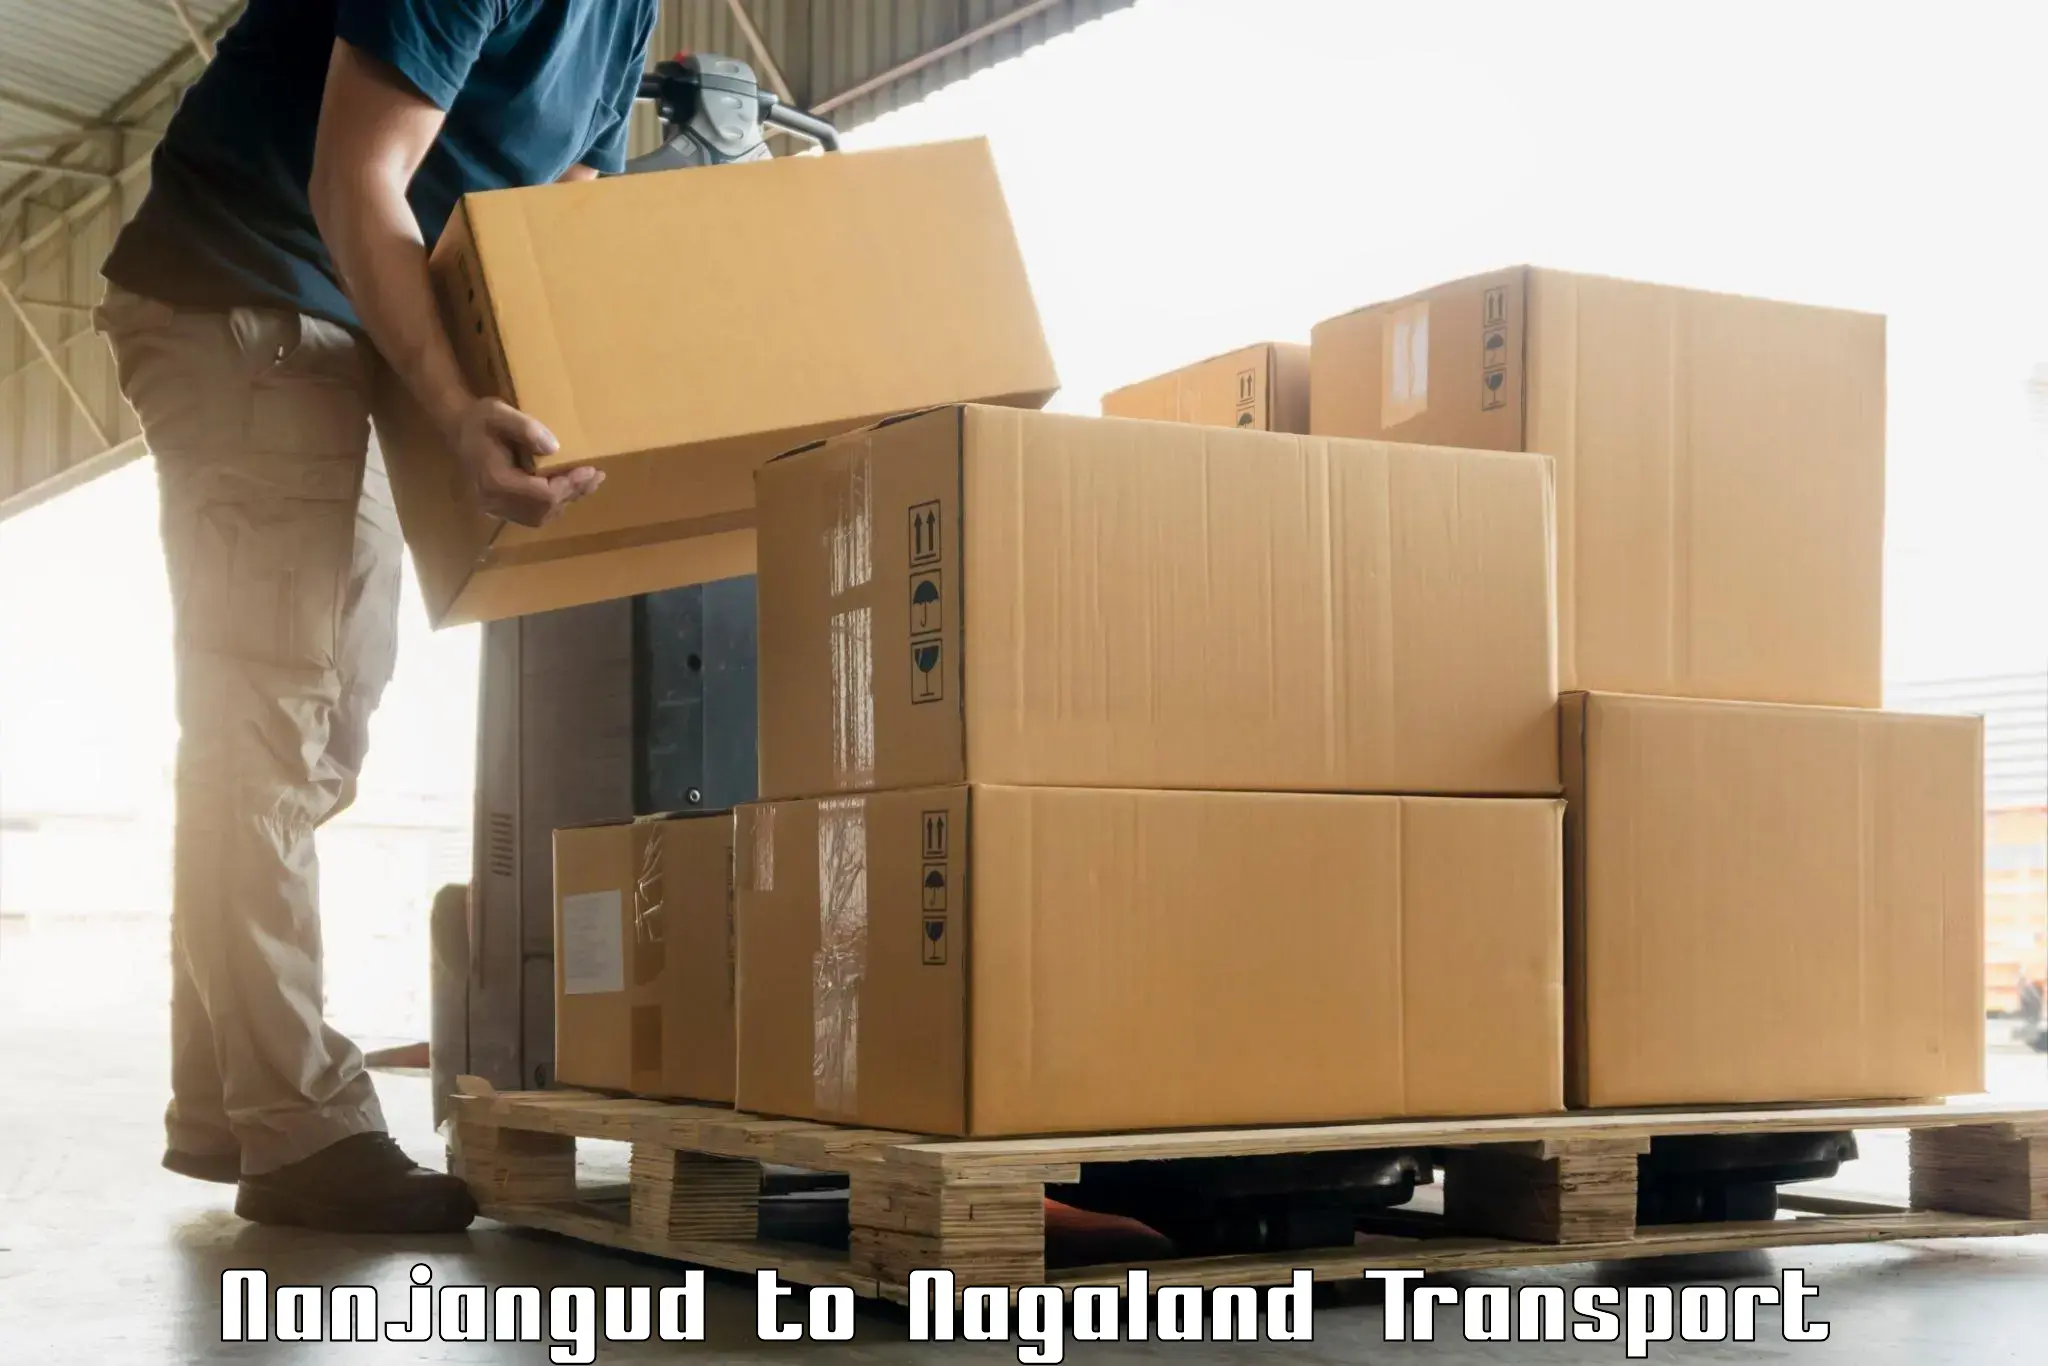 Interstate transport services Nanjangud to NIT Nagaland